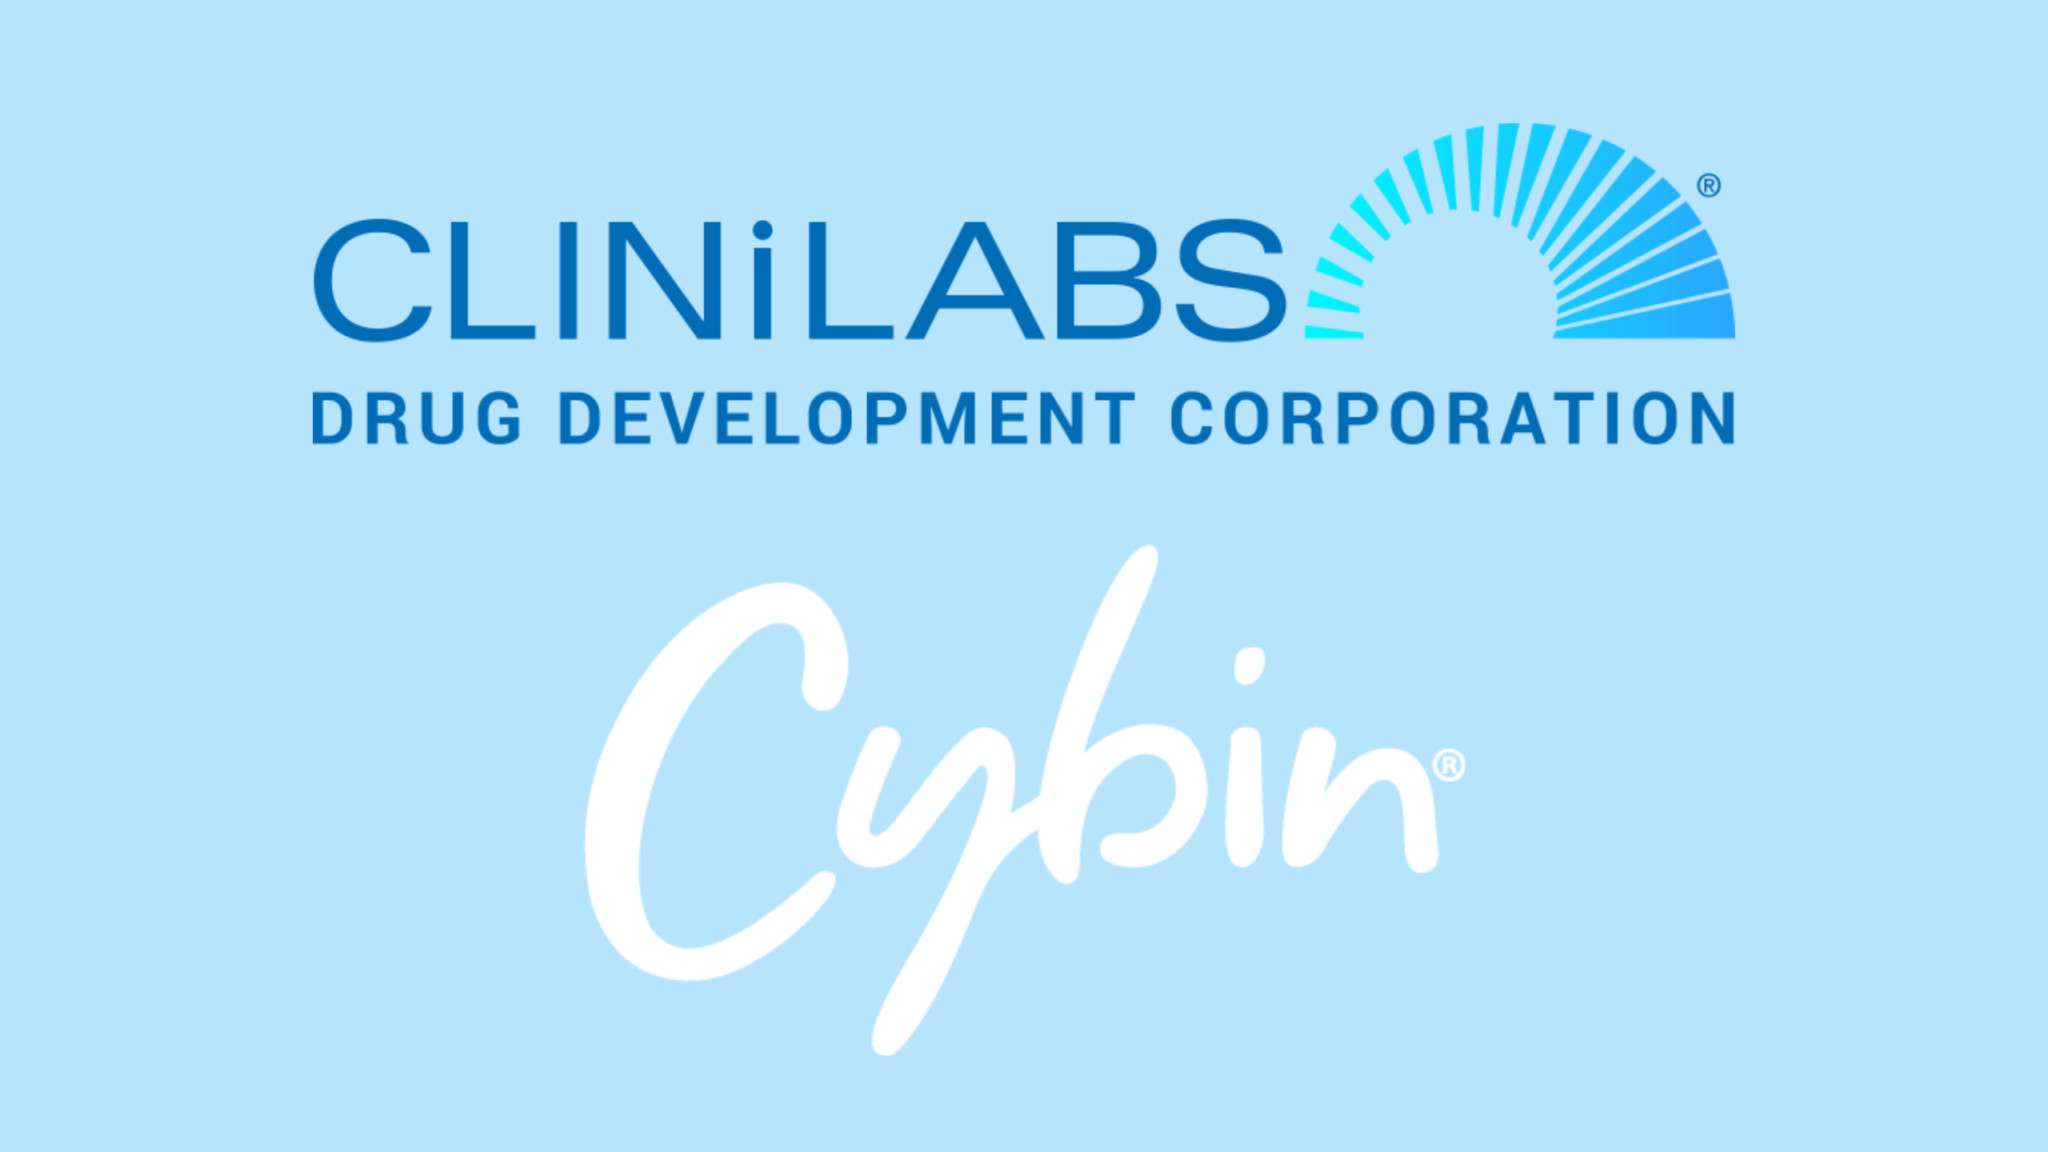 Clinilabs logo and Cybin